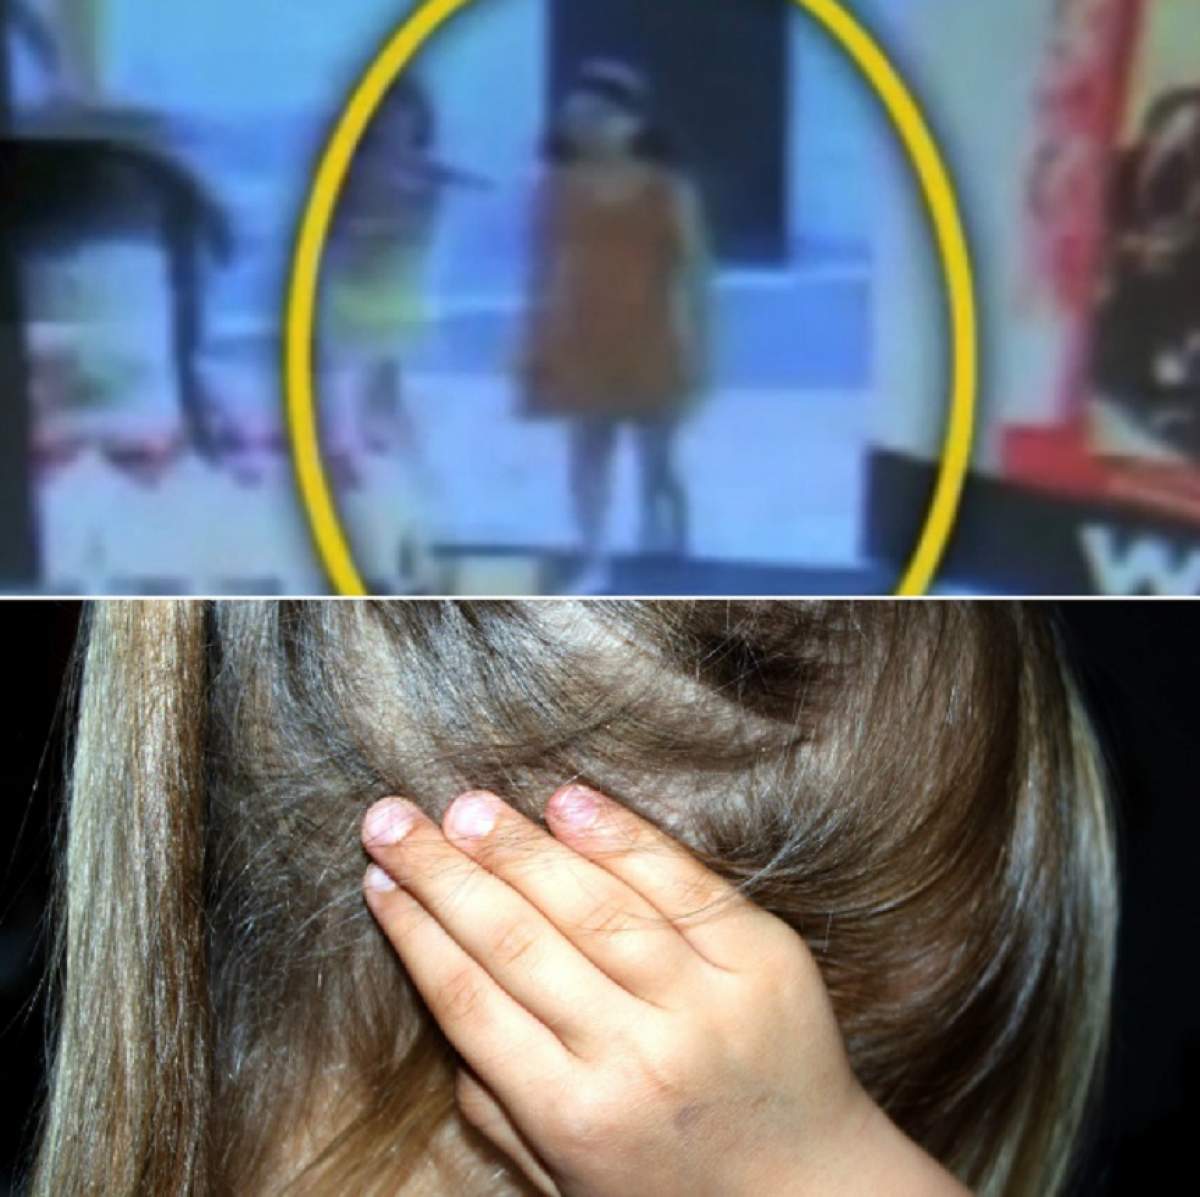 VIDEO / Un medic legist a izbucnit în lacrimi când a văzut ce găseşte în corpul unei fetiţe de 8 ani! "Nu a murit repede"